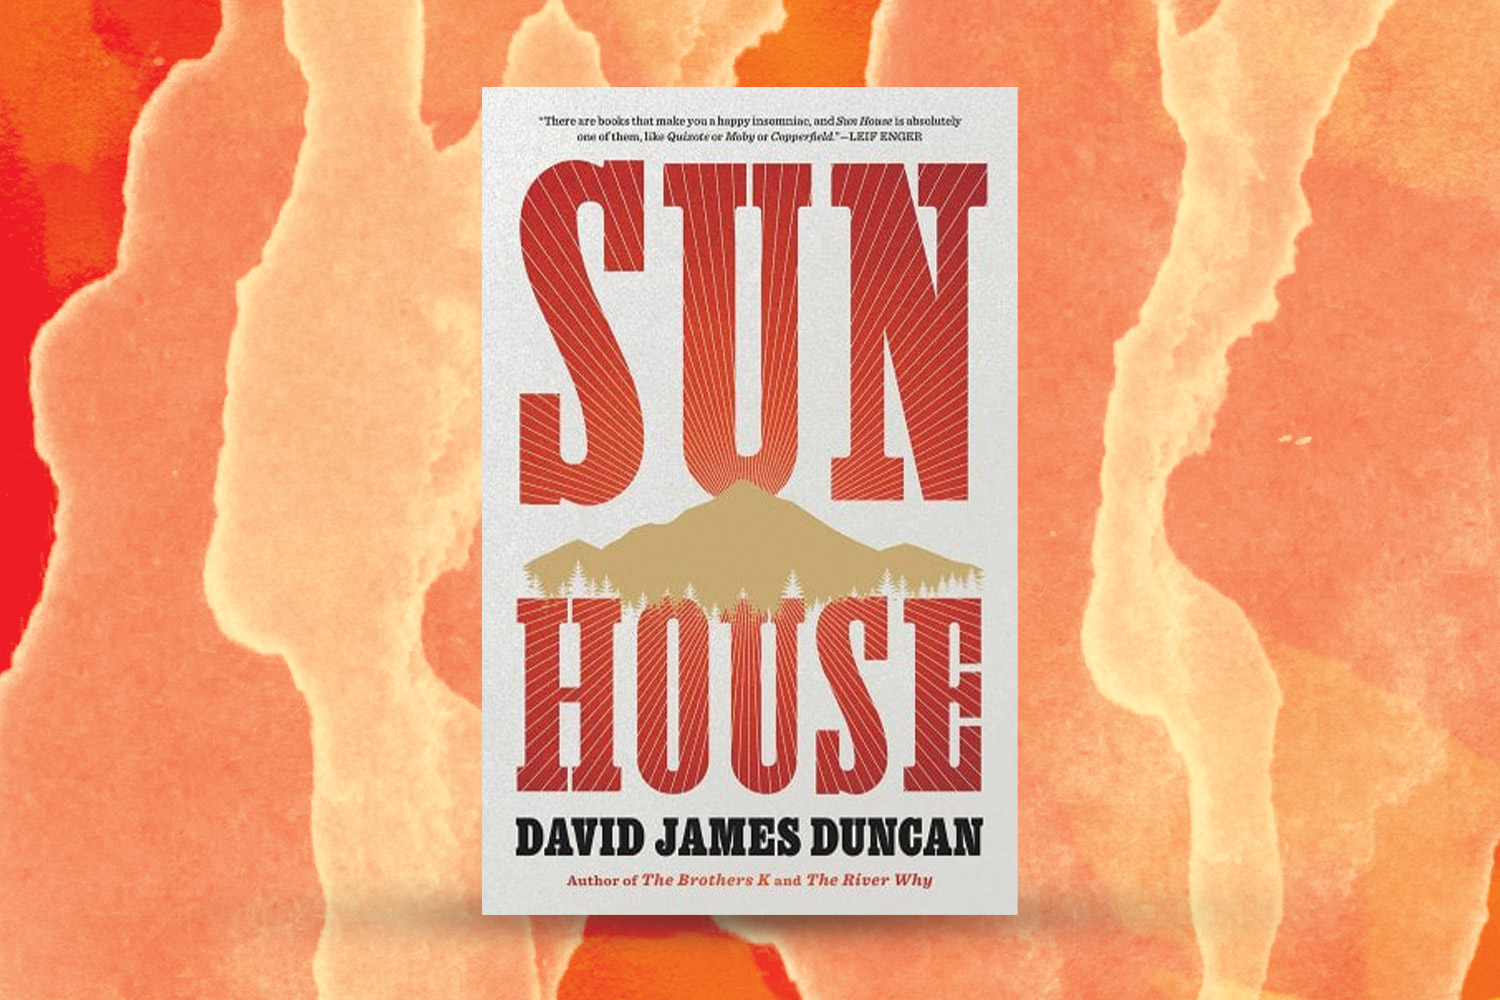 "Sun House" cover